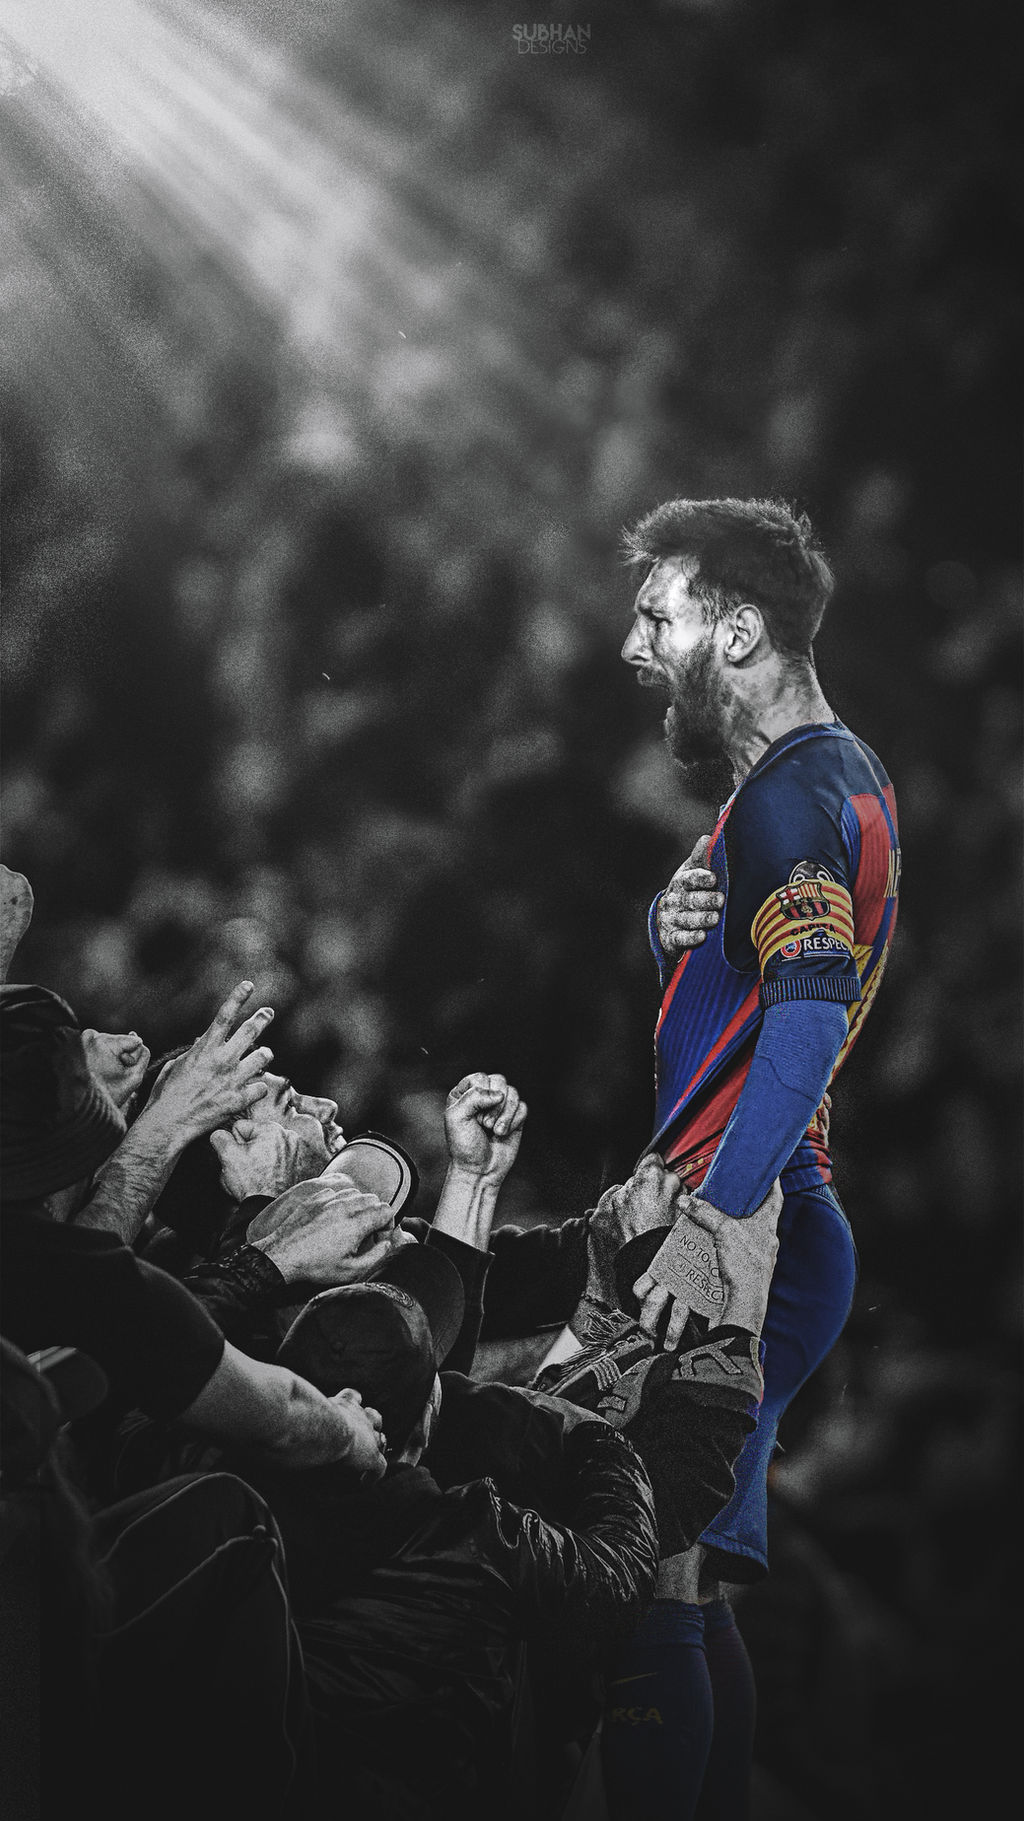 Làm cho màn hình của bạn trở nên thú vị hơn với những hình nền Messi vs PSG tuyệt đẹp. Hãy chiêm ngưỡng sự hoàn hảo trong màu sắc và định dạng hình ảnh.